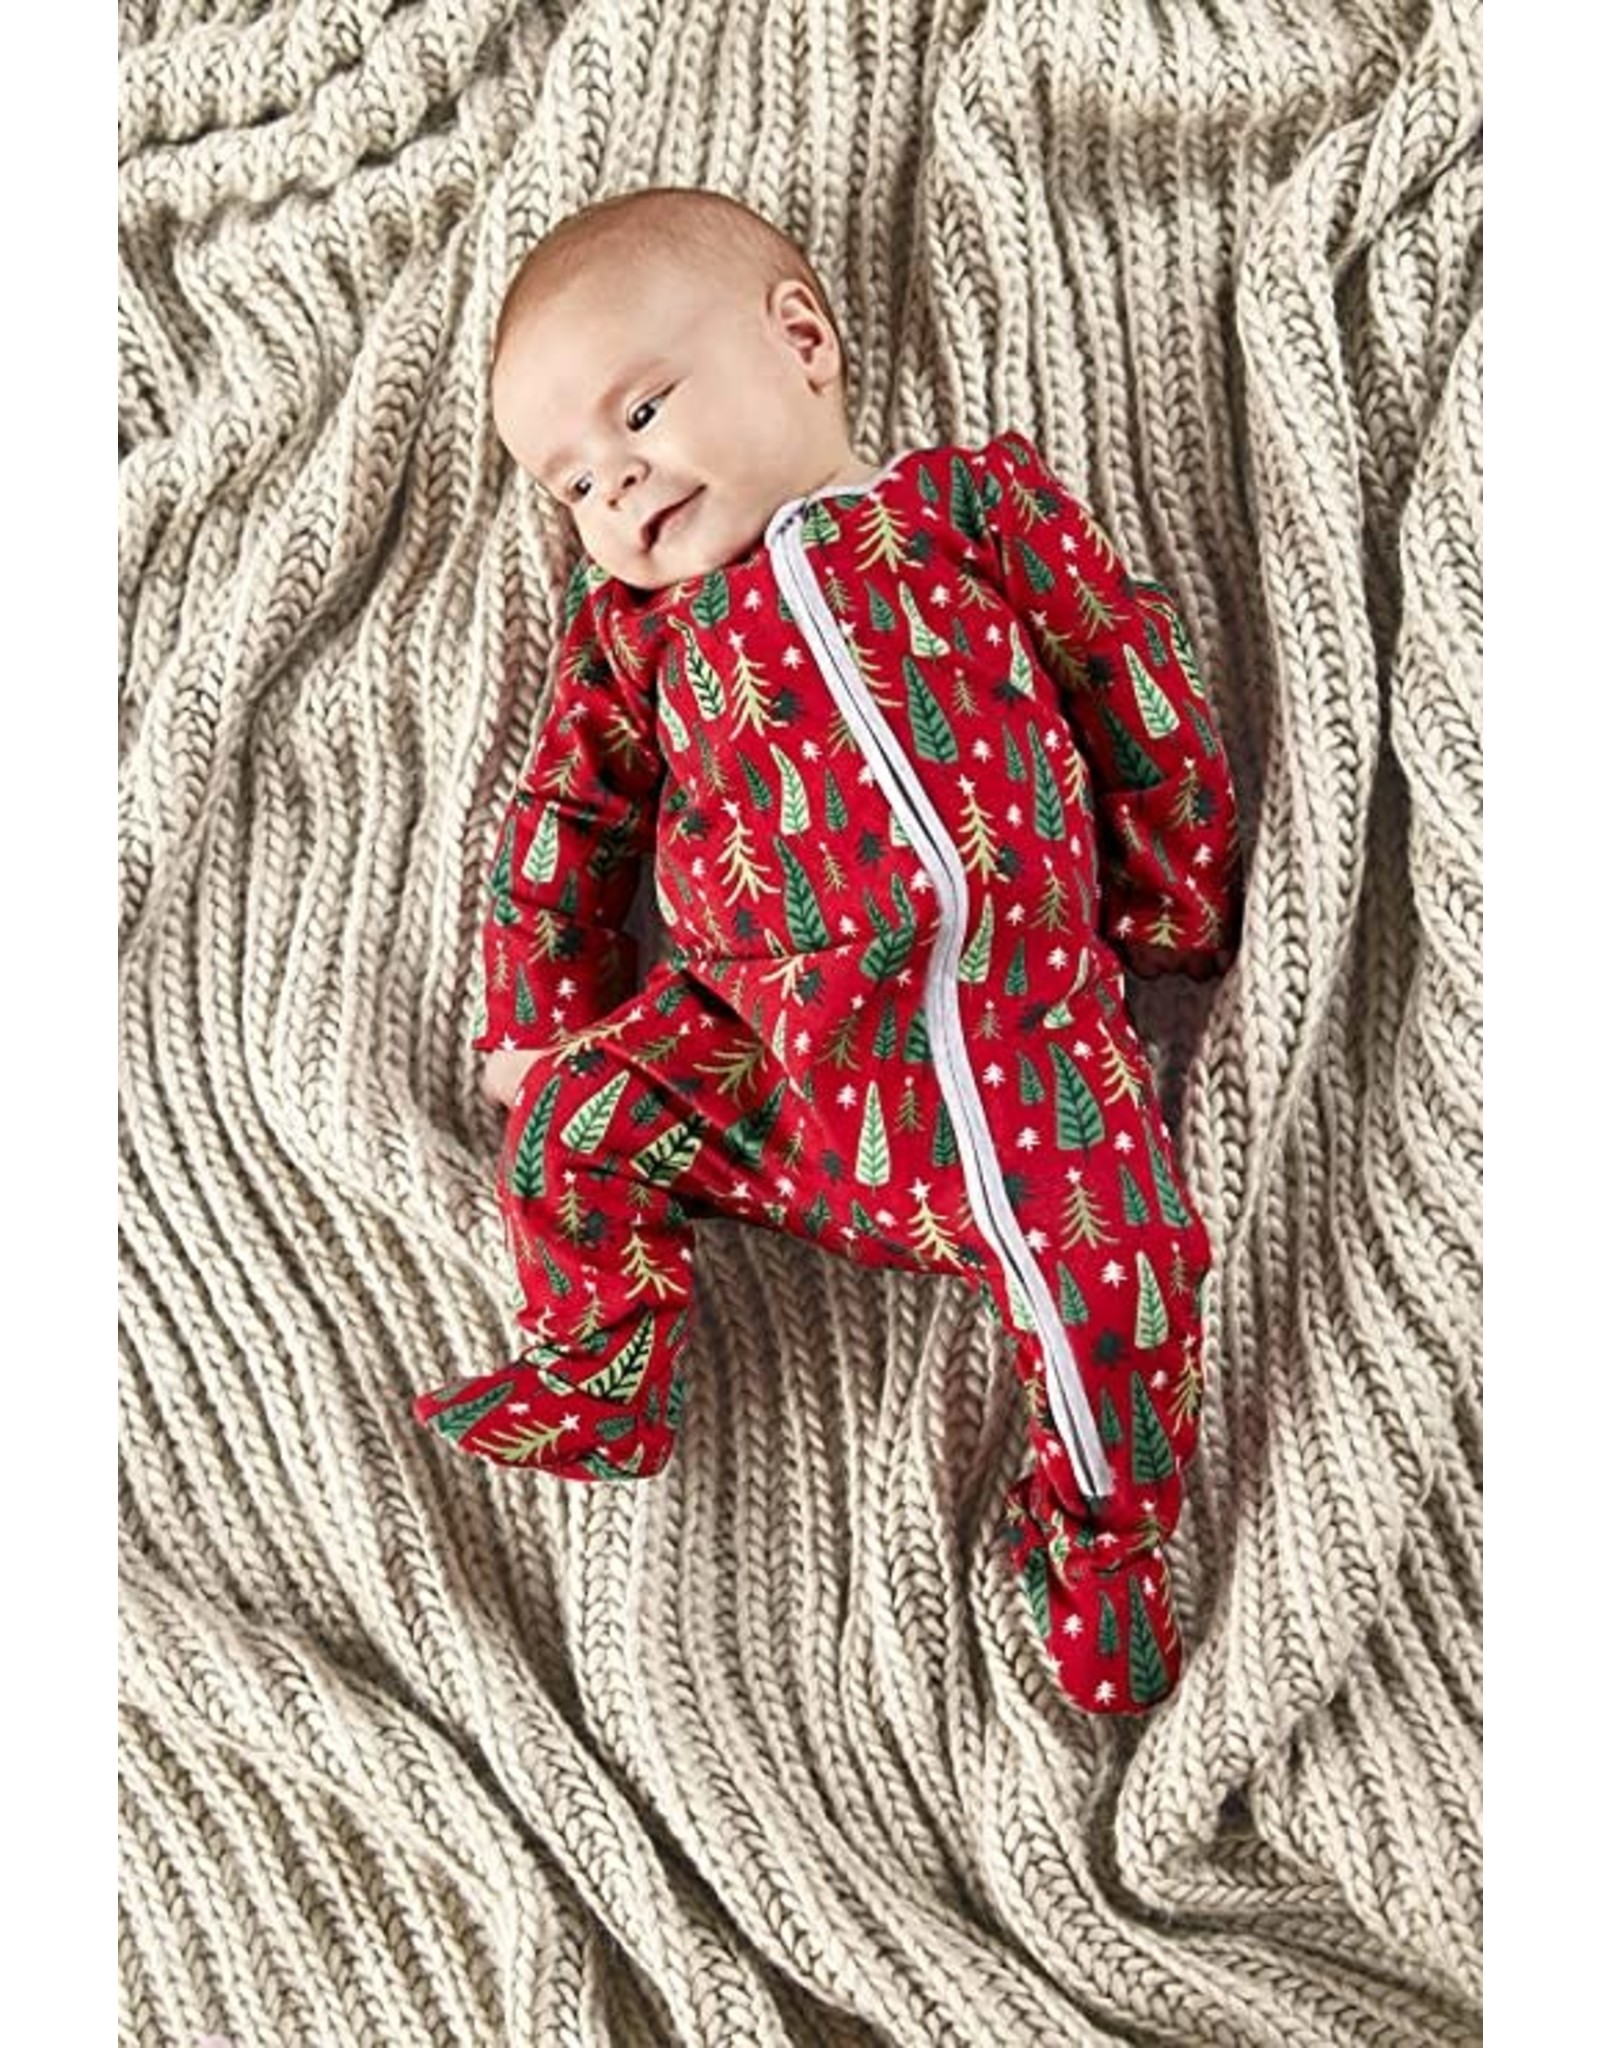 Mud Pie Christmas Sleepwear Family Pajamas Sleeper Baby 6-9 Months